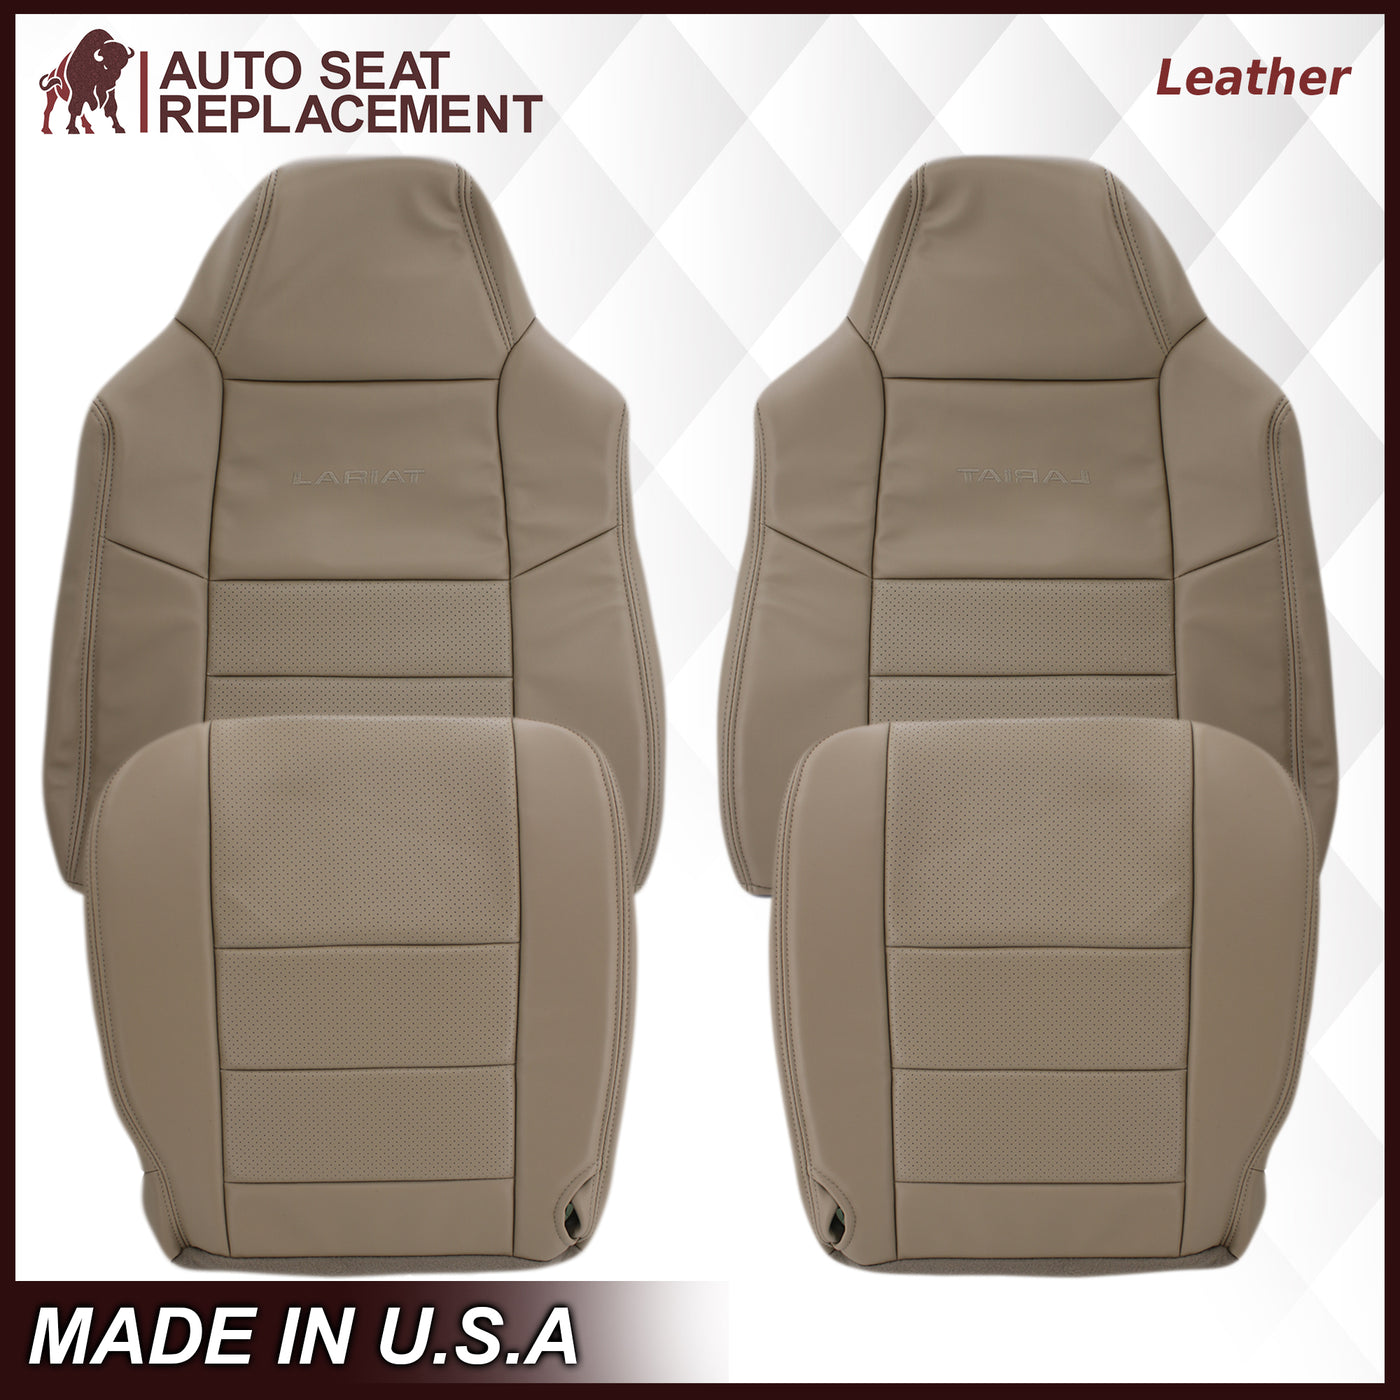 Aubergine Utænkelig Lover og forskrifter 2002-2003 Ford F250 F350 Lariat Perforated Seat Cover in Tan: Choose  Leather or Vinyl